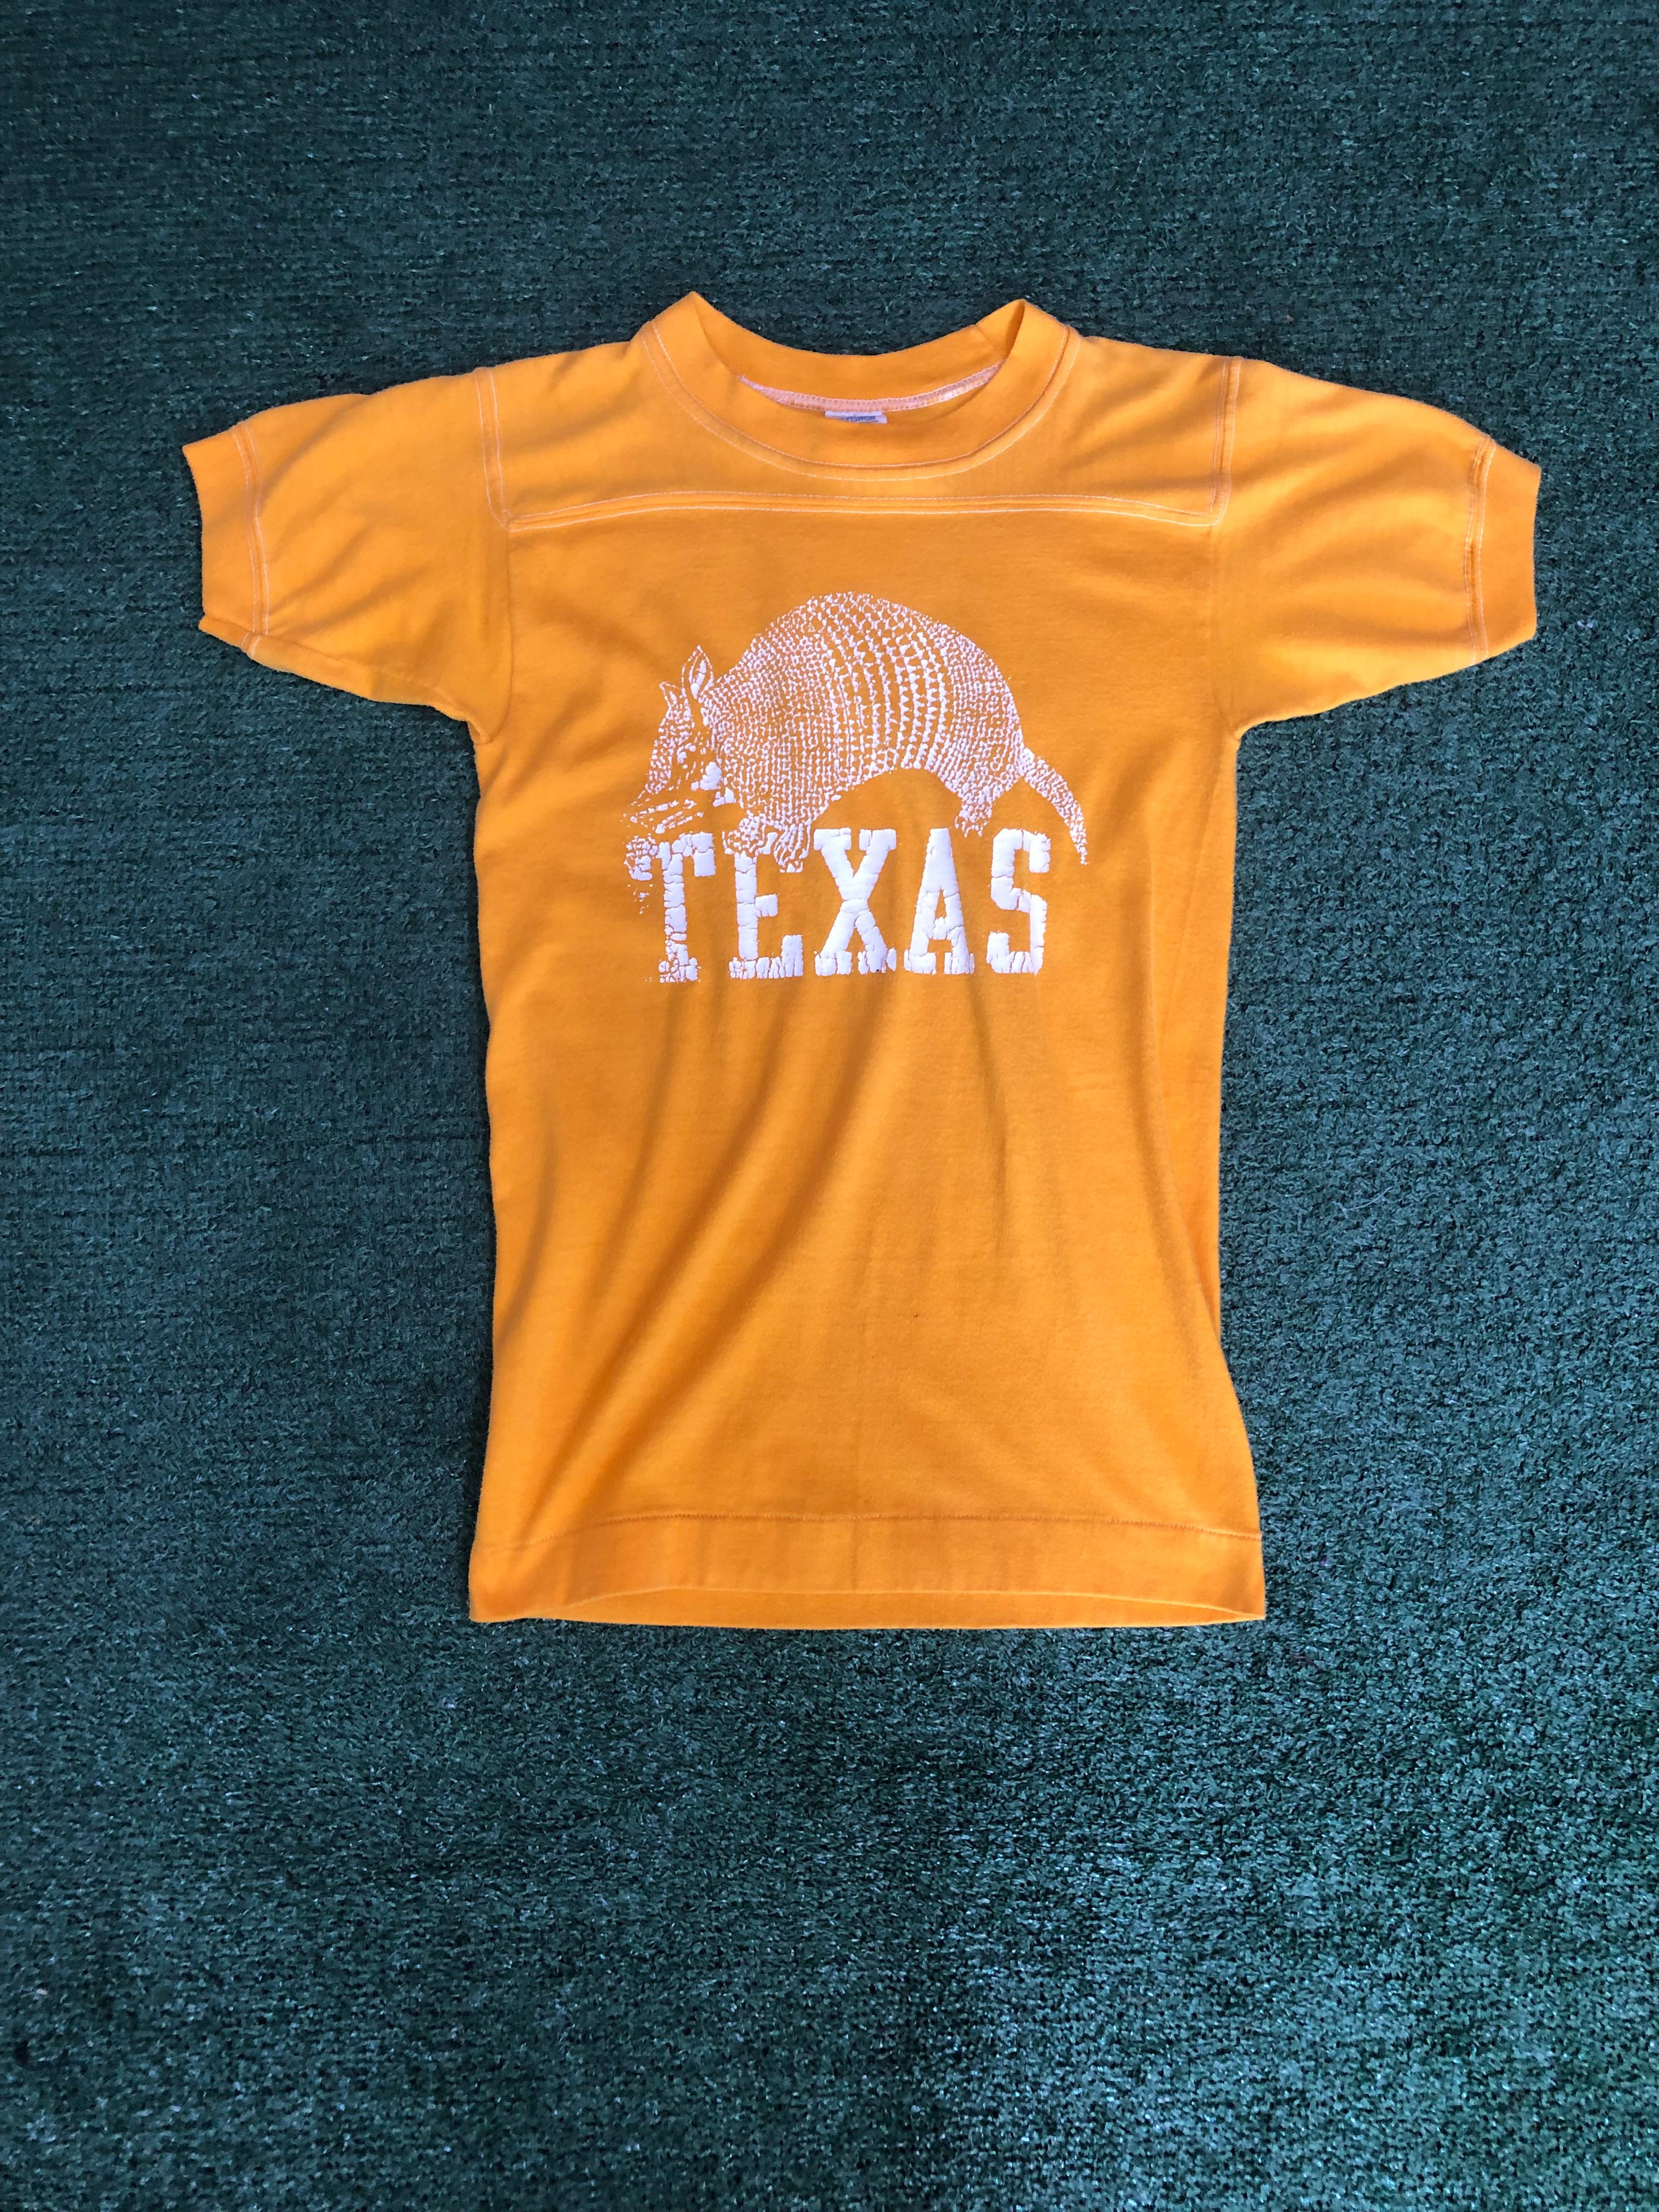 Vintage 1970s Amarillo Texas shirt